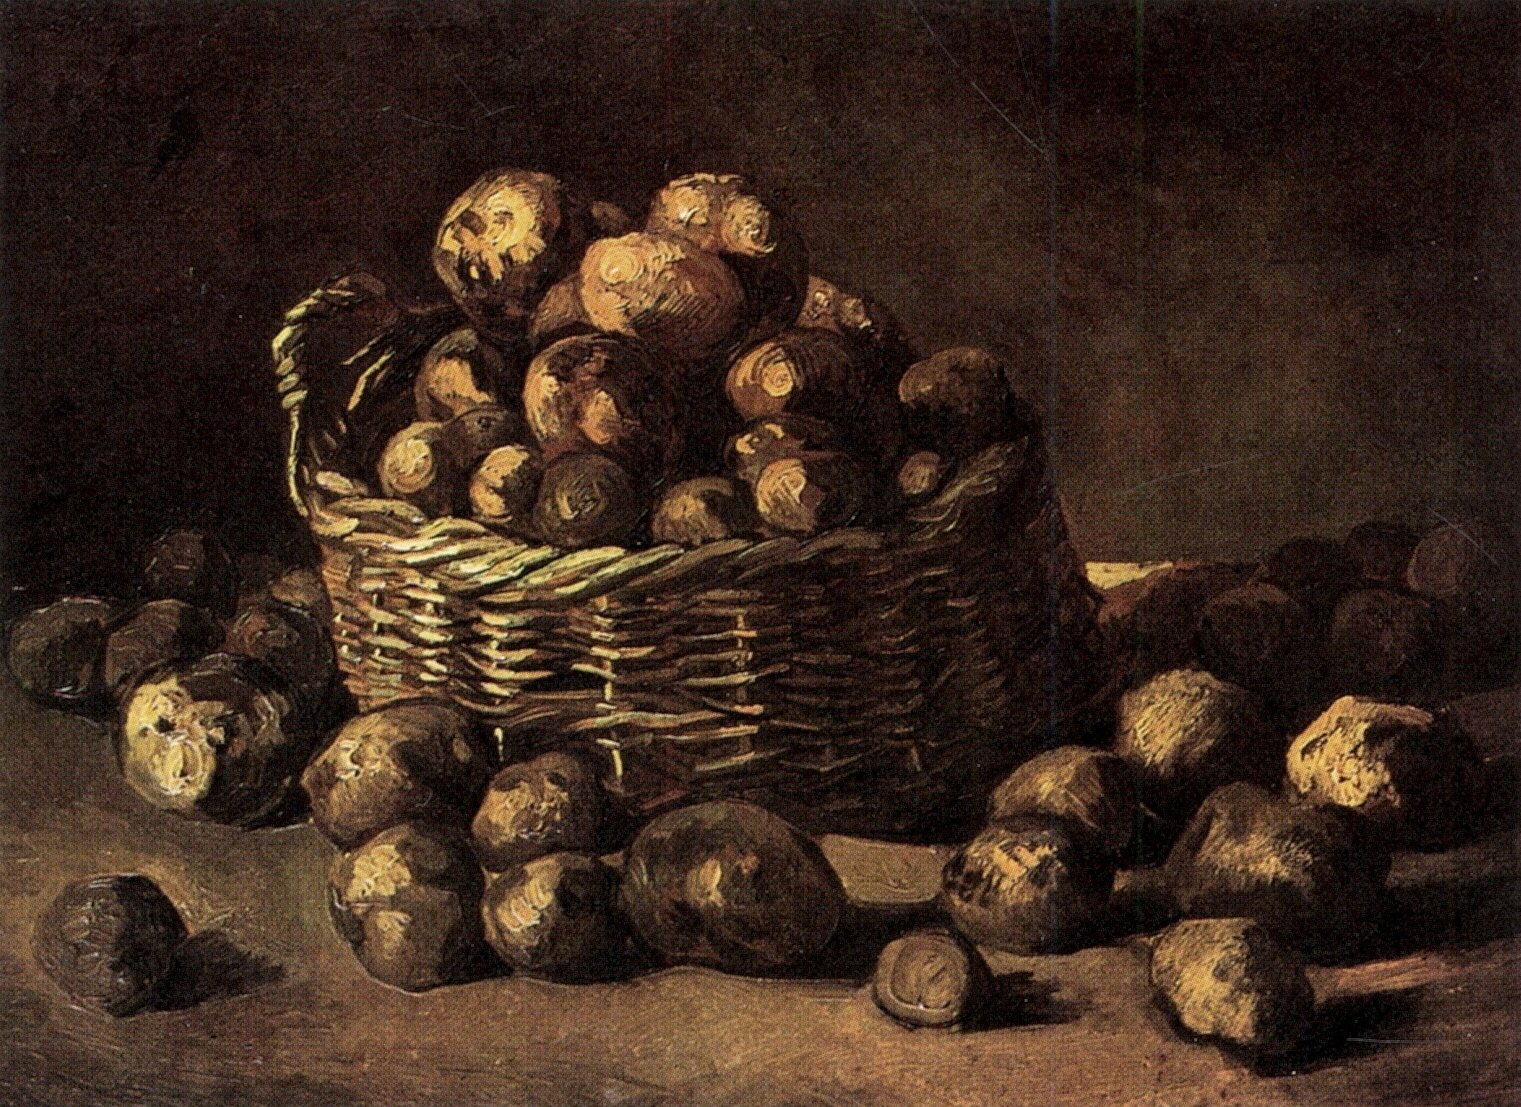 Van Gogh and gnocchi alla sorrentina (Eng)